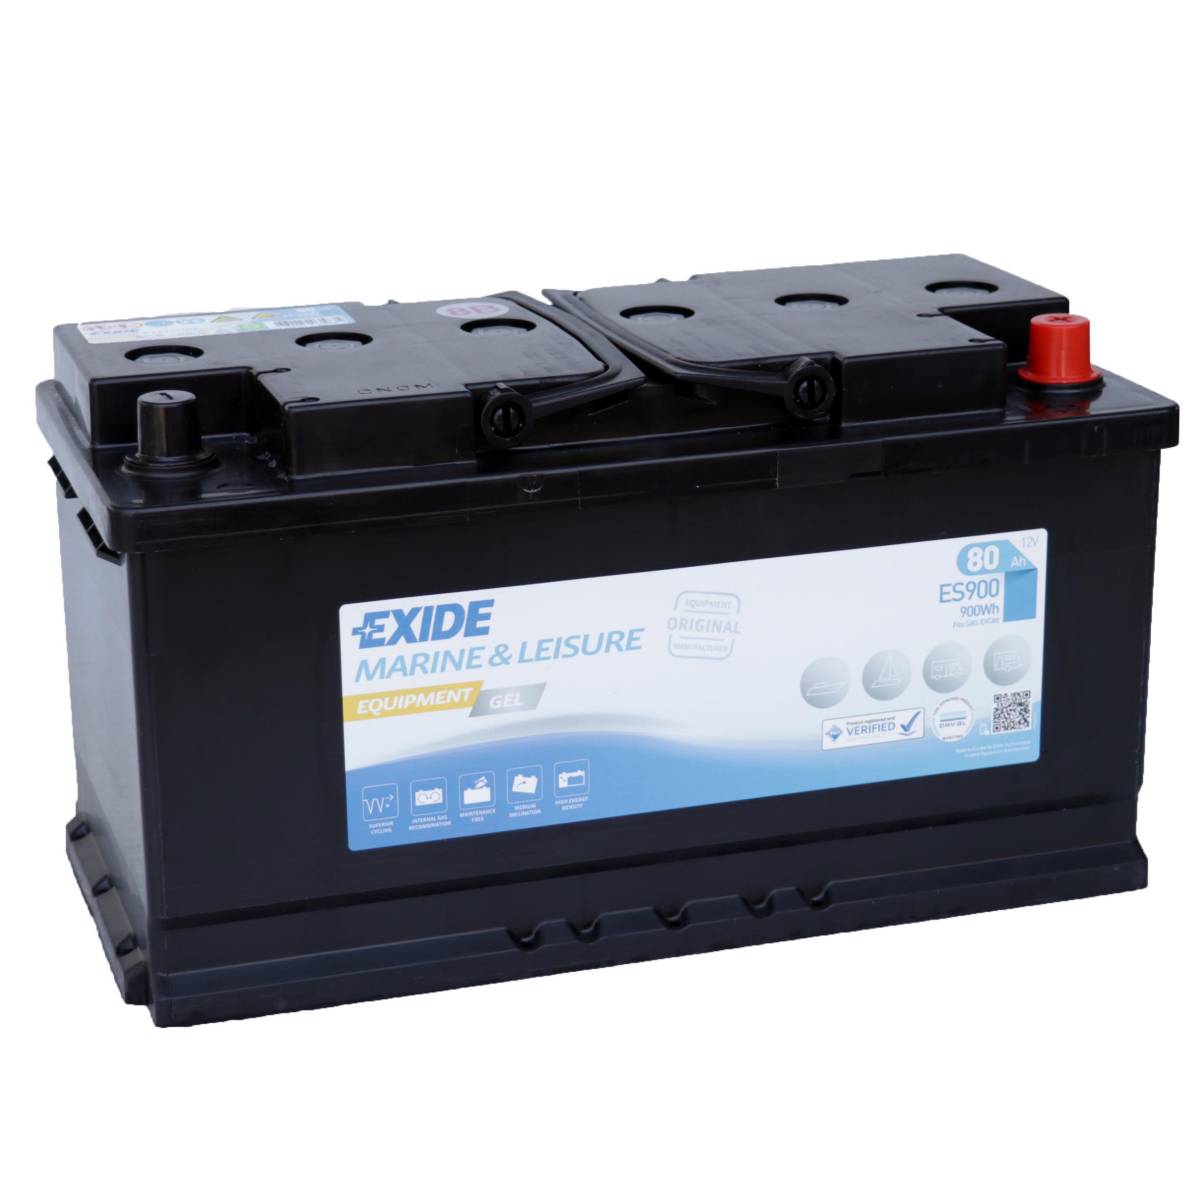 Exide ES900 (replaces G80) 12V 80Ah lead gel battery VRLA